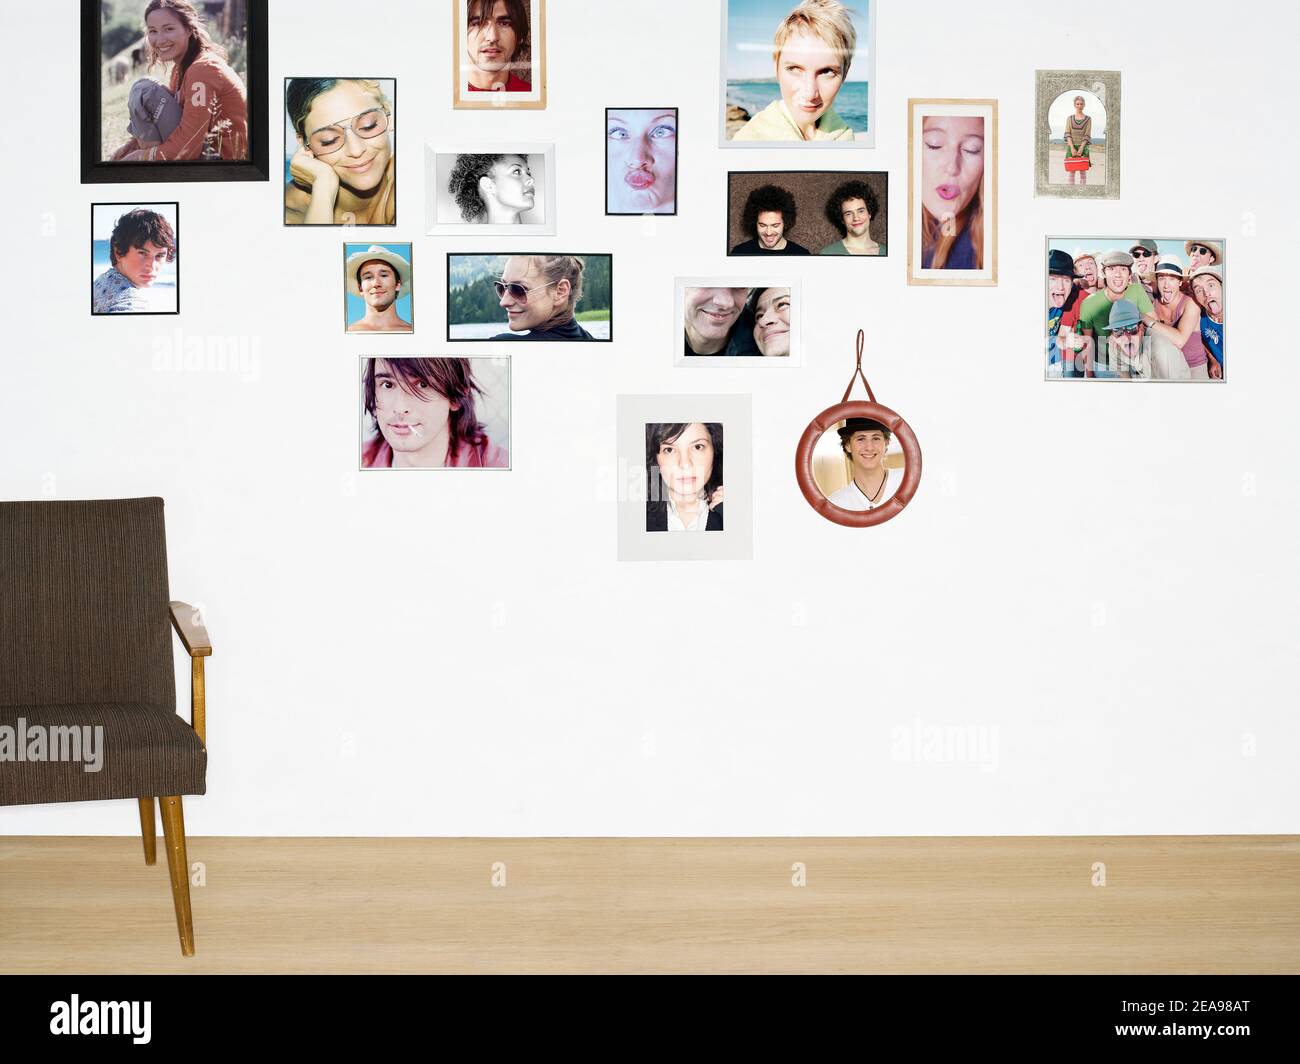 Pared con fotos de retratos de diferentes personas, en marcos de fotos, suelo de madera, silla vacía Foto de stock